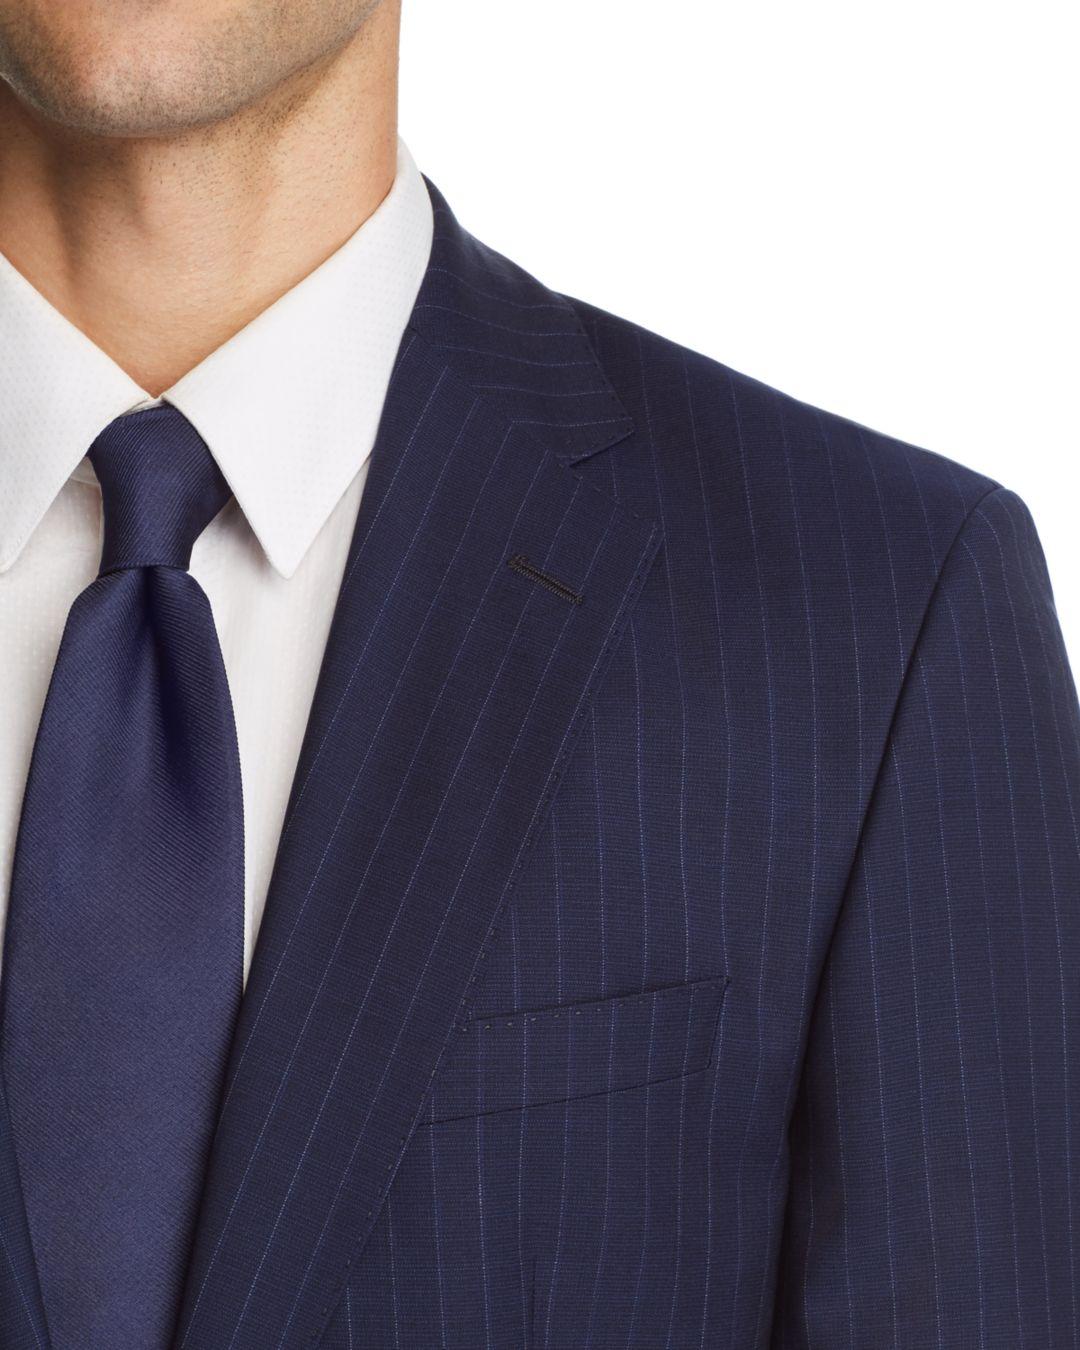 BOSS by HUGO BOSS Boss Johnstons/lenon Regular Fit Subtle Pinstripe Suit in  Navy (Blue) for Men - Lyst